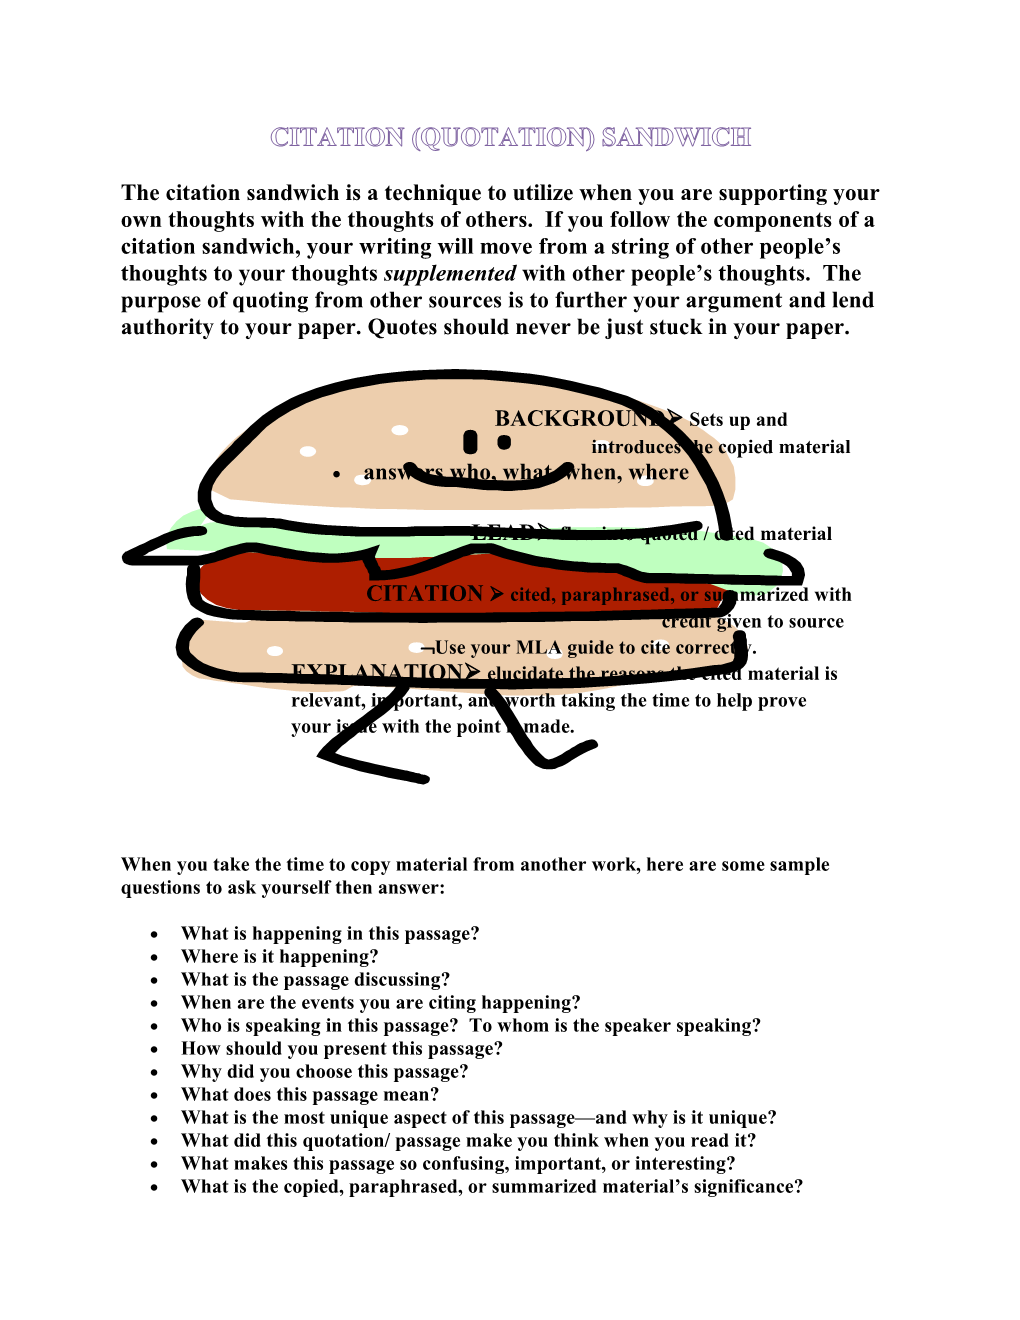 Citation (Quotation) Sandwich